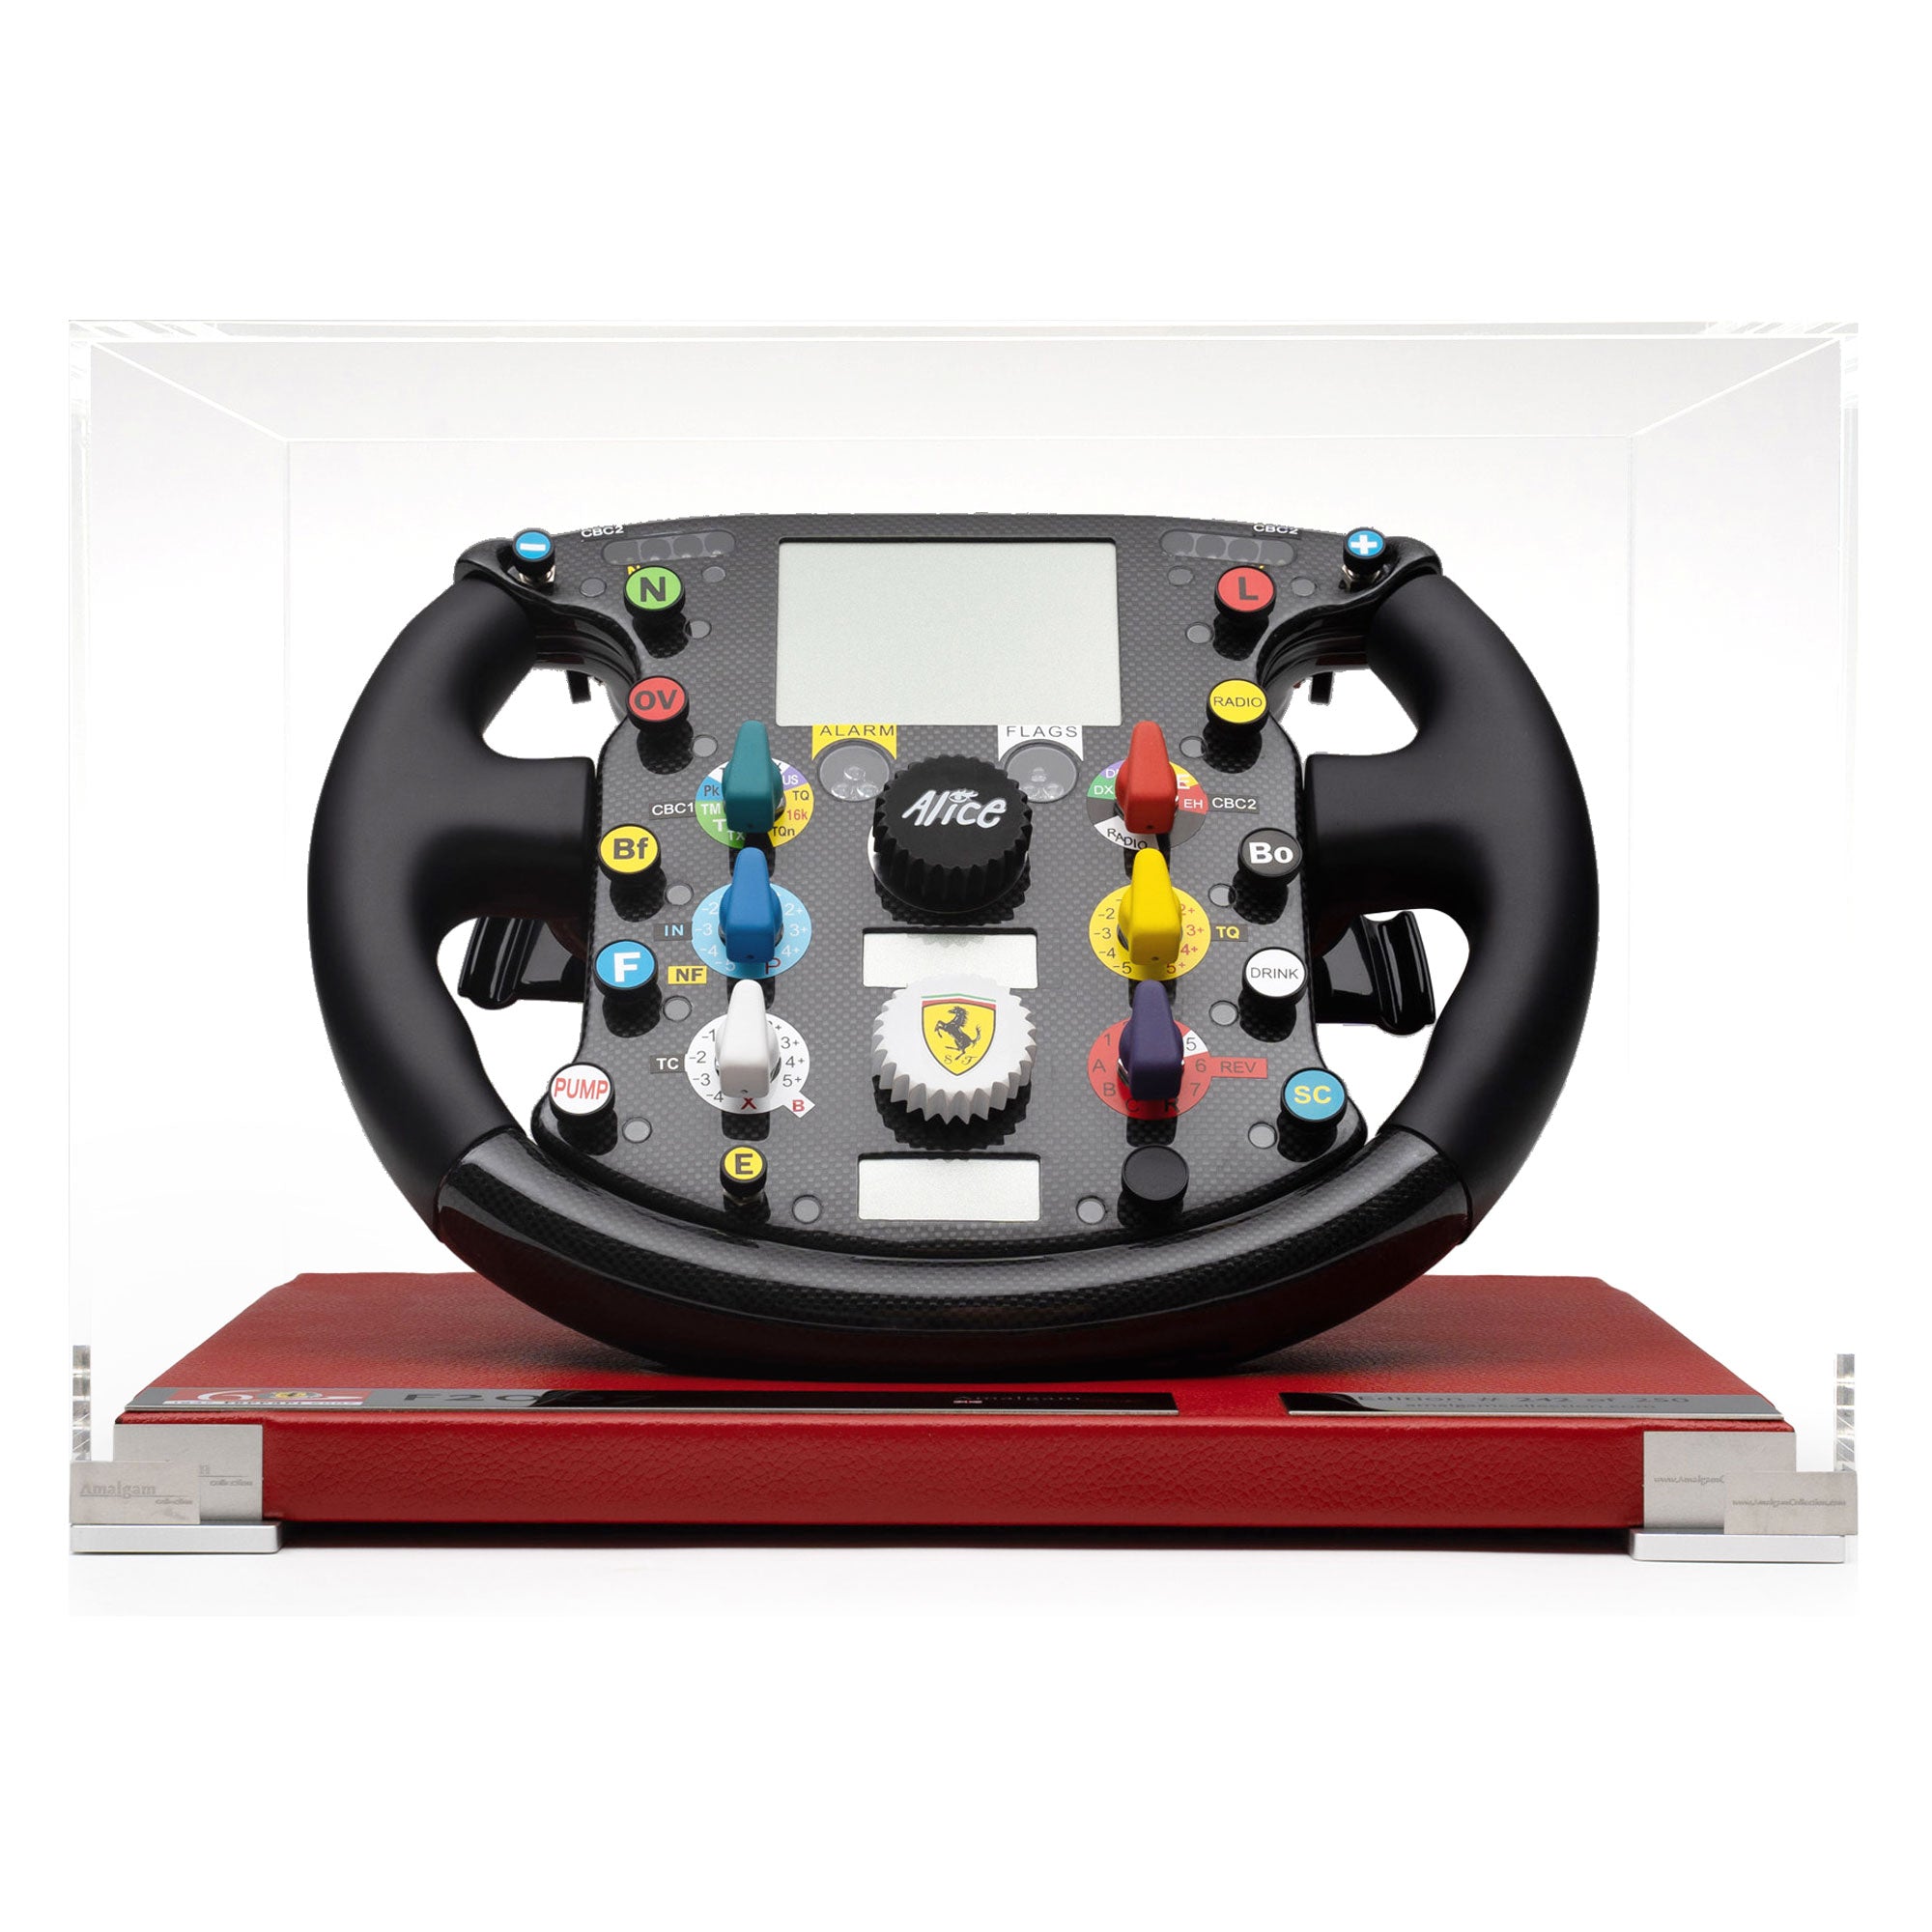 Scuderia Ferrari 2007 F2007 1:1 Steering Wheel - Amalgam Collection